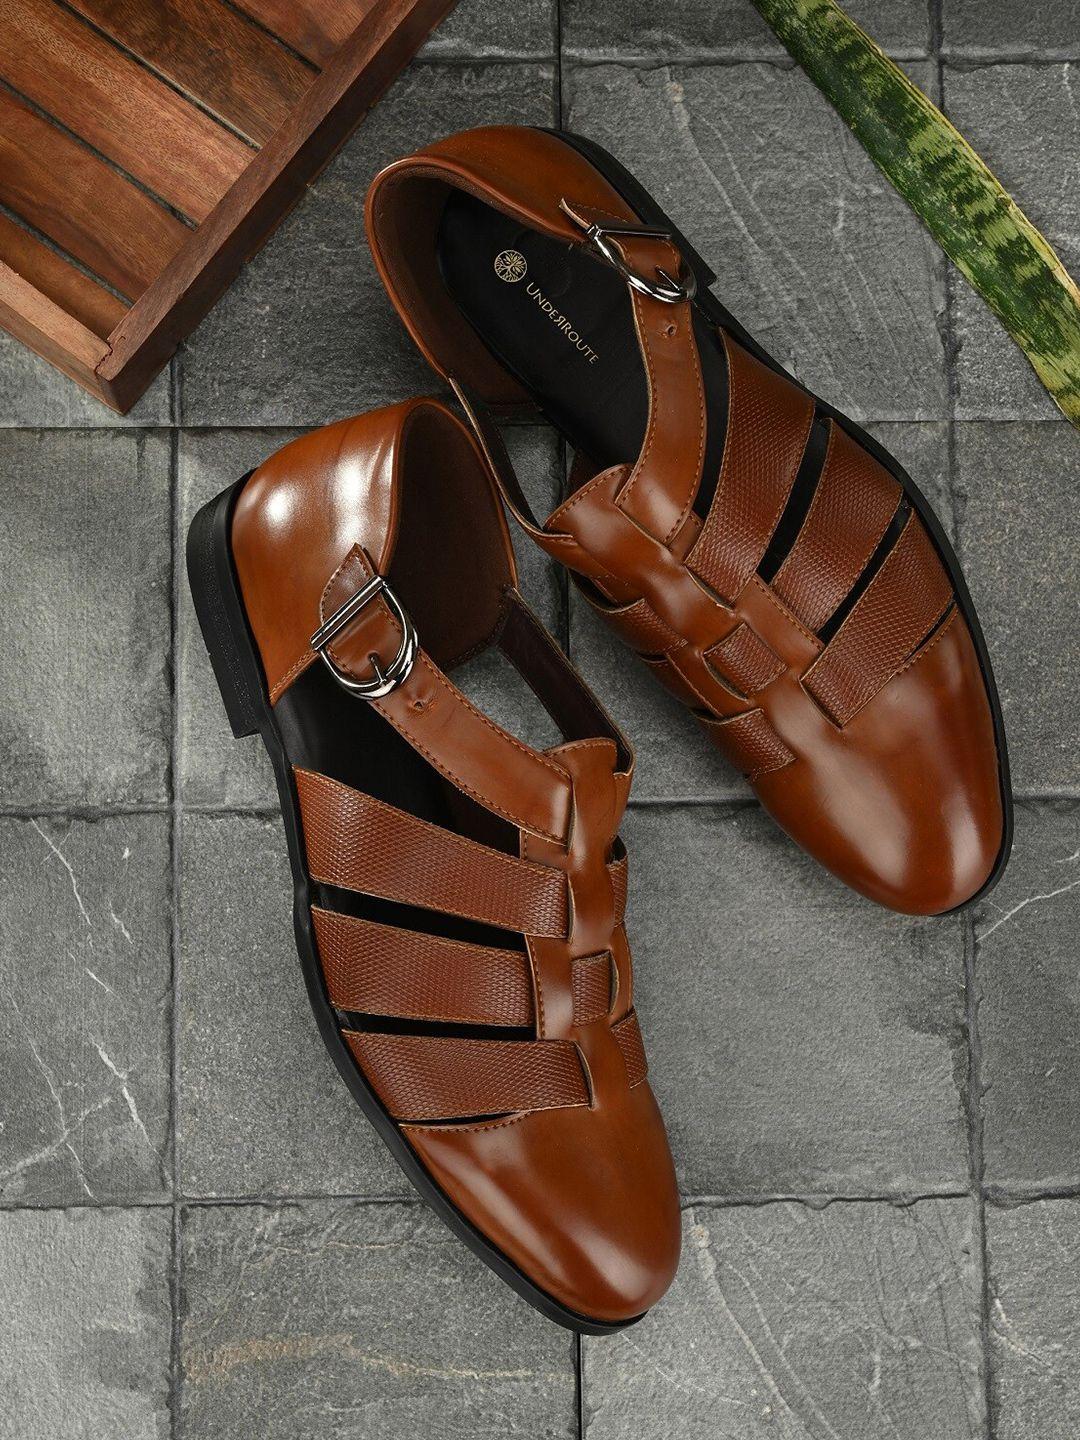 UNDERROUTE Men Tan Brown Shoe-Style Sandals